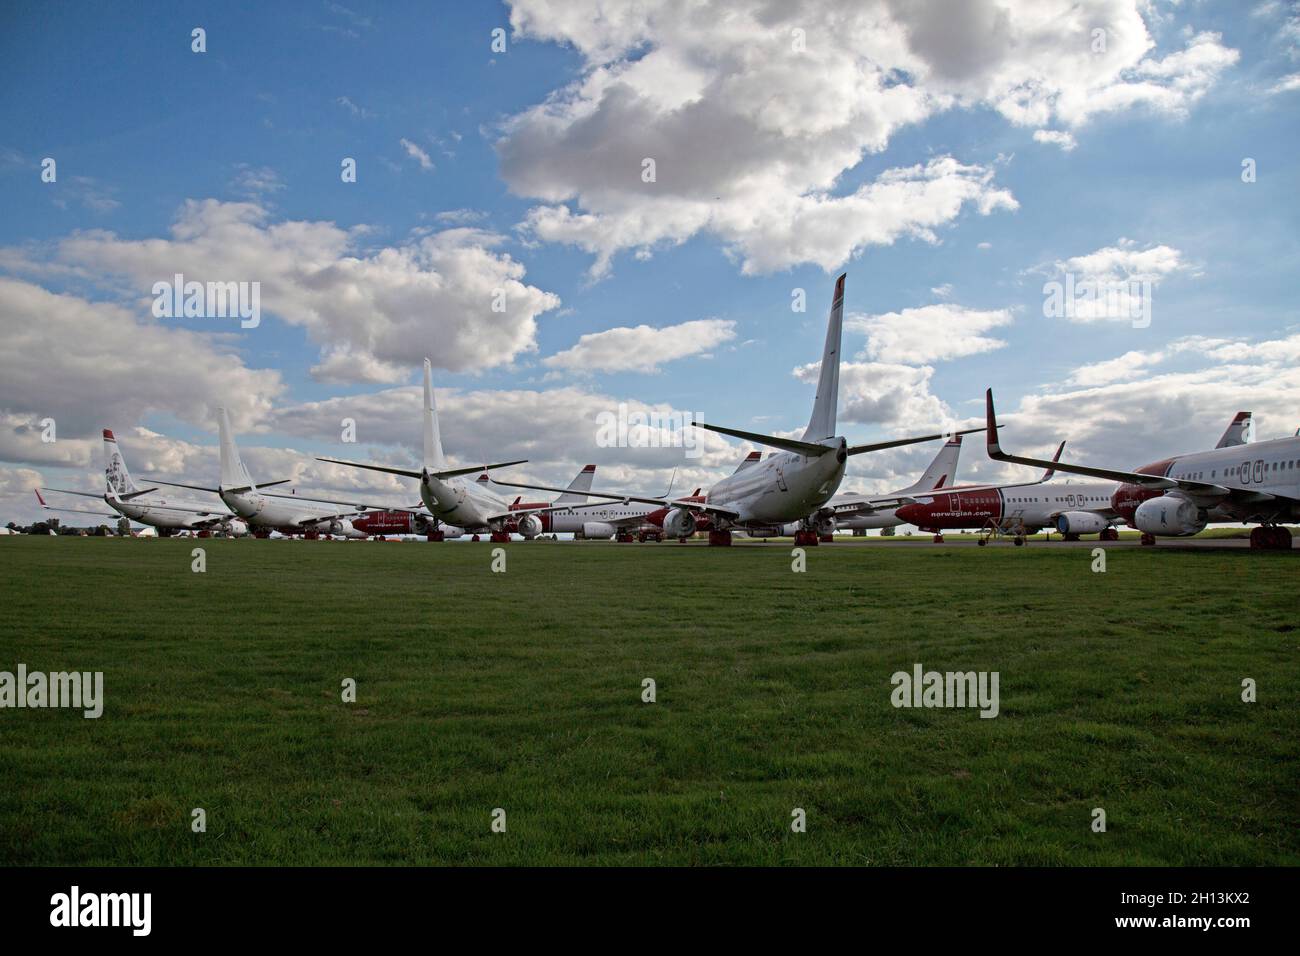 Una fila de aviones Boeing 737 almacenados en el aeropuerto de Cotswold, Inglaterra. Estos se han almacenado debido a la falta de negocio debido a la epidemia de COVID. Foto de stock